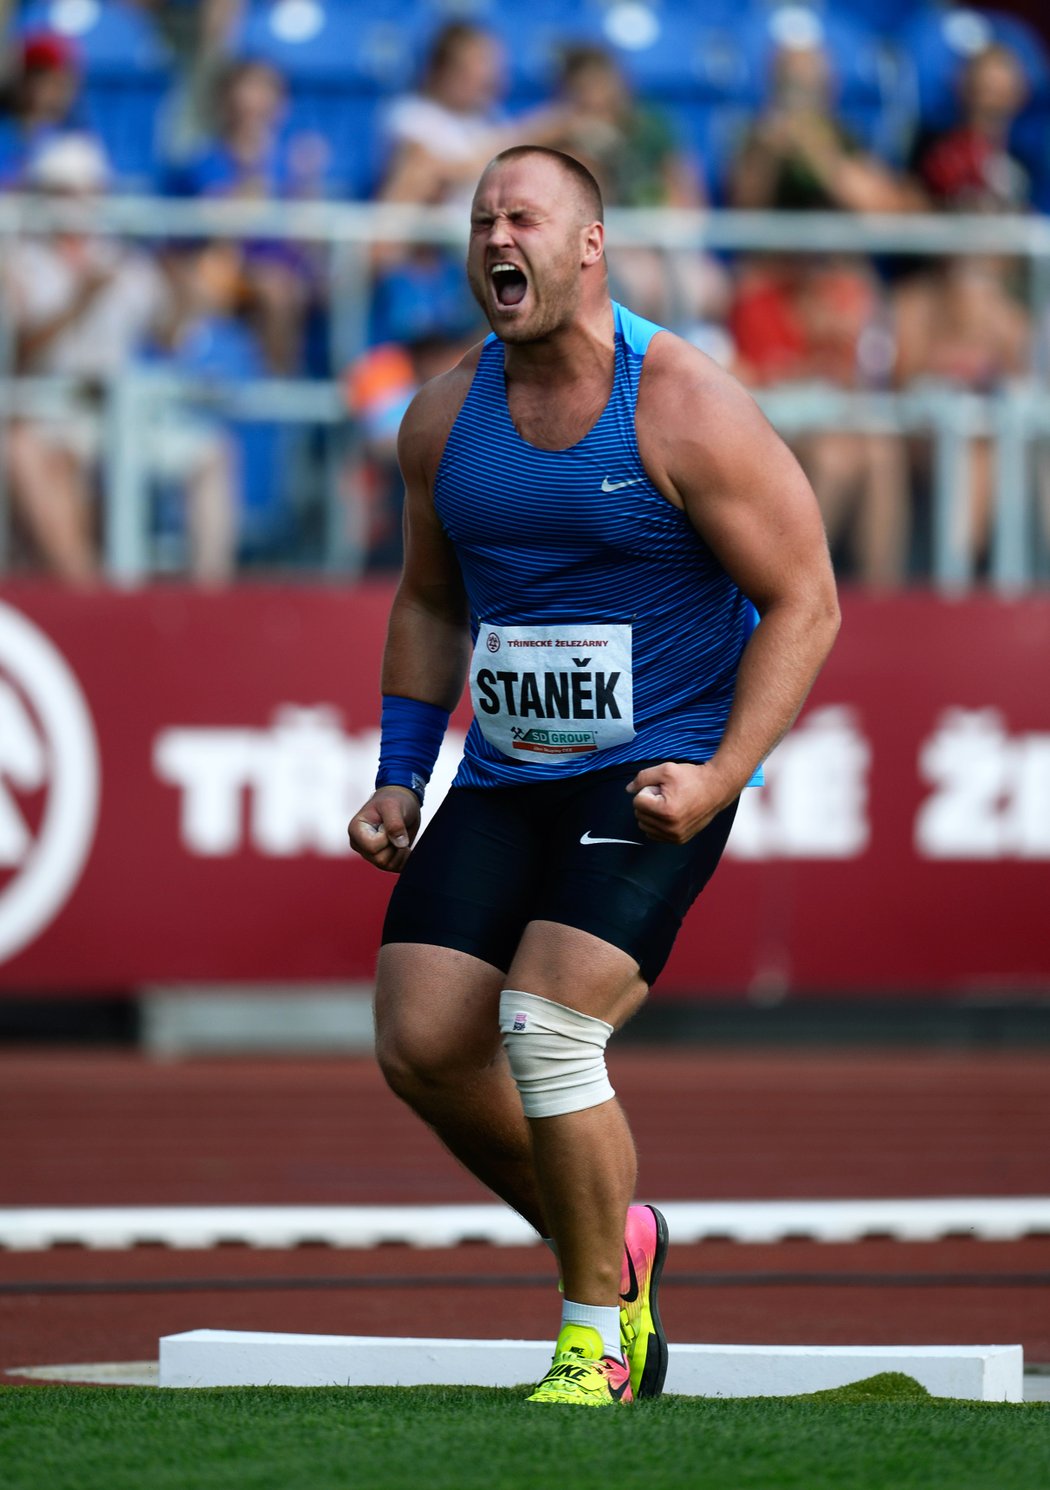 Český koulař Tomáš Staněk si zajistil účast v nedělním finále MS hned prvním pokusem 20,76 m, jímž o centimetr překonal kvalifikační limit.